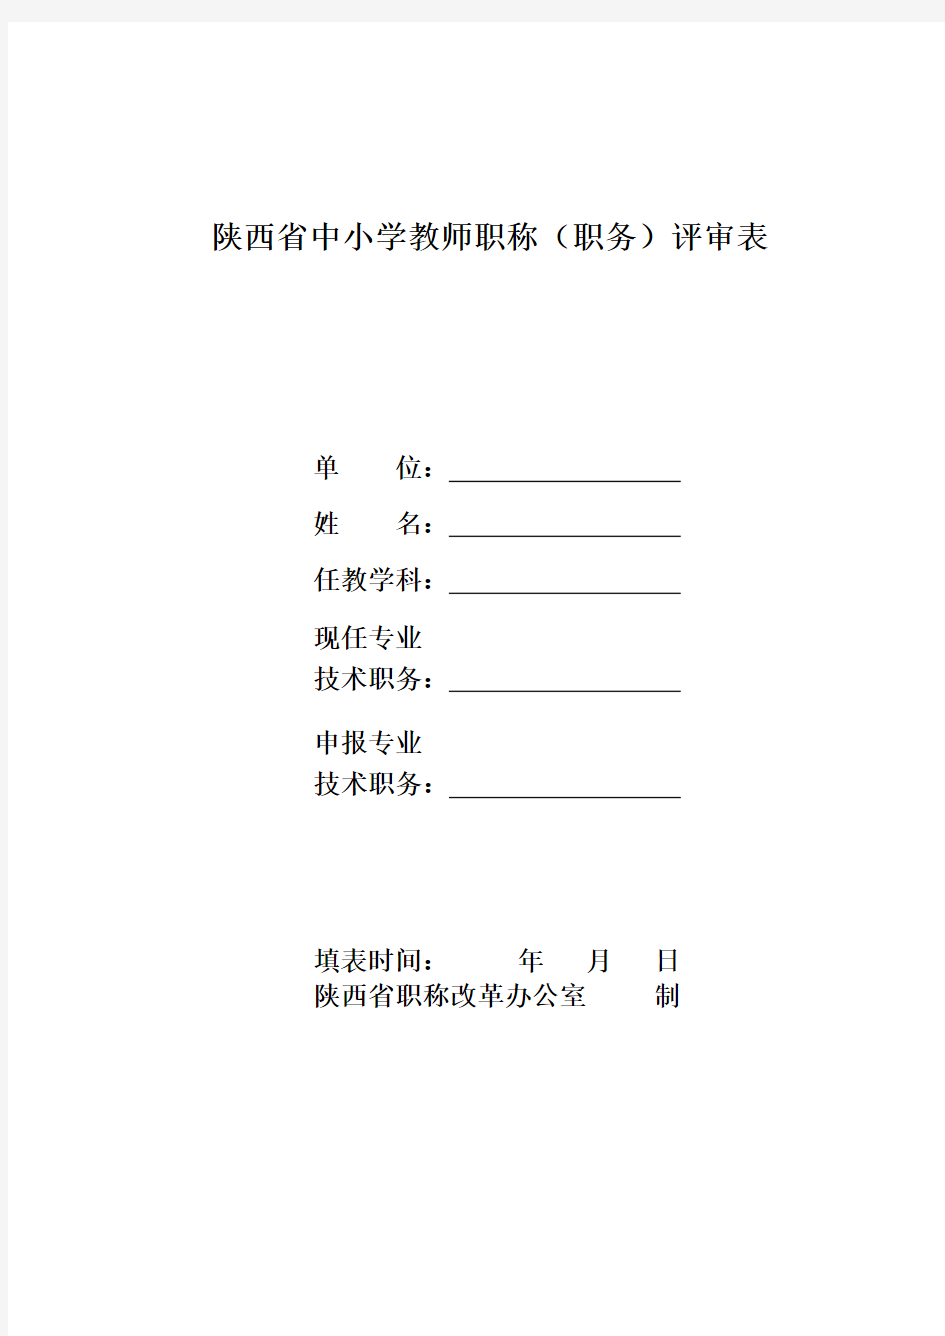 2020年(岗位职责)陕西省中小学教师职称(职务)评审表